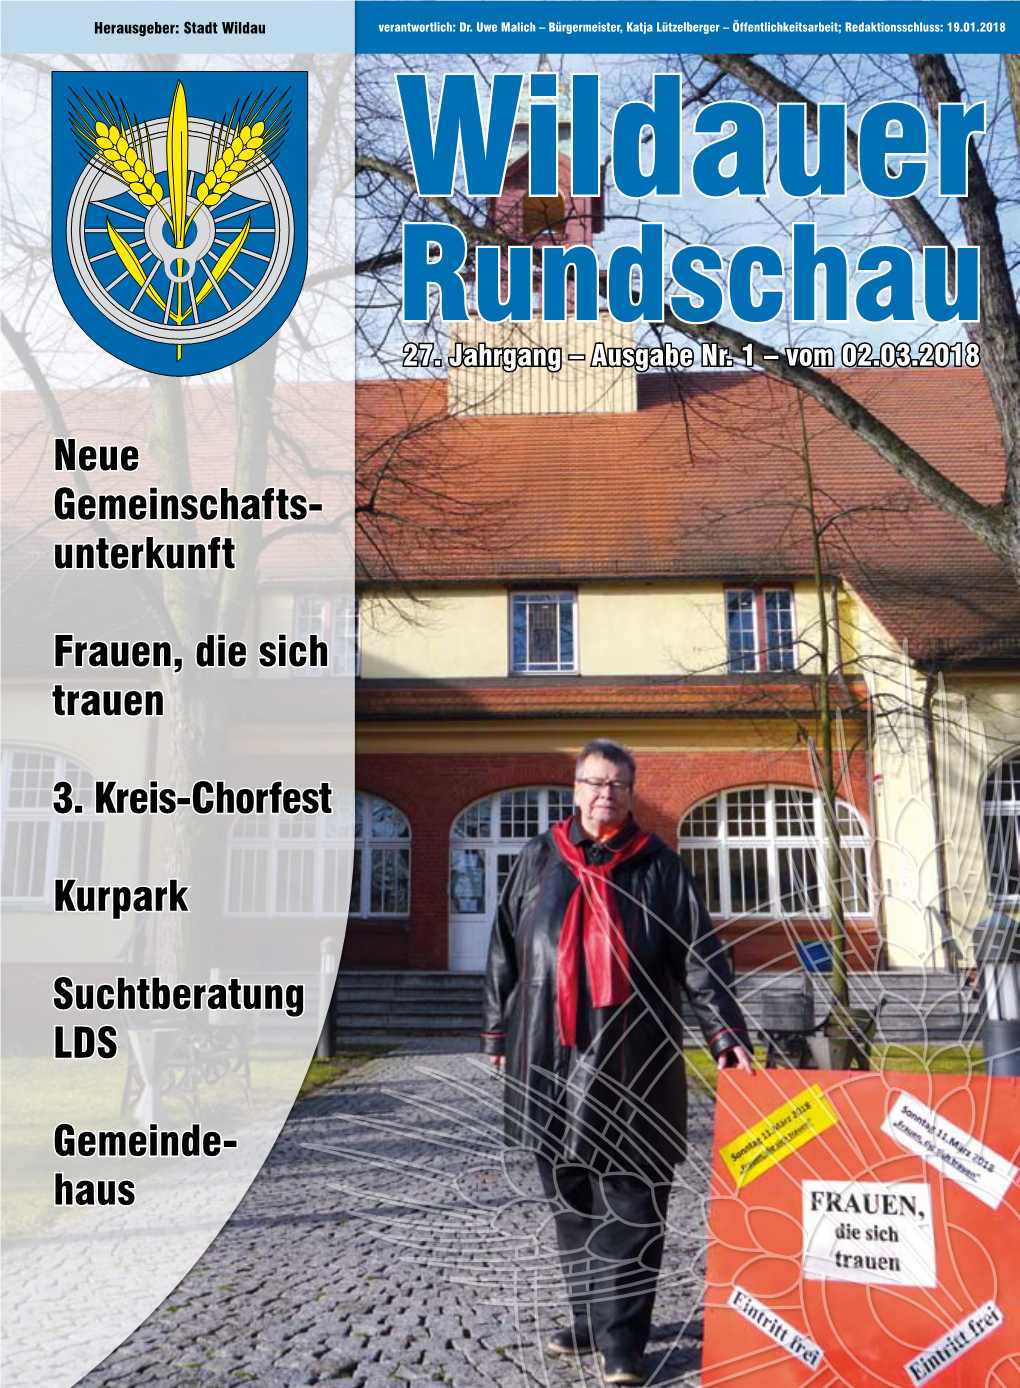 Wildauer Rundschau Nr. 1 Vom 02.03.2018.Pdf